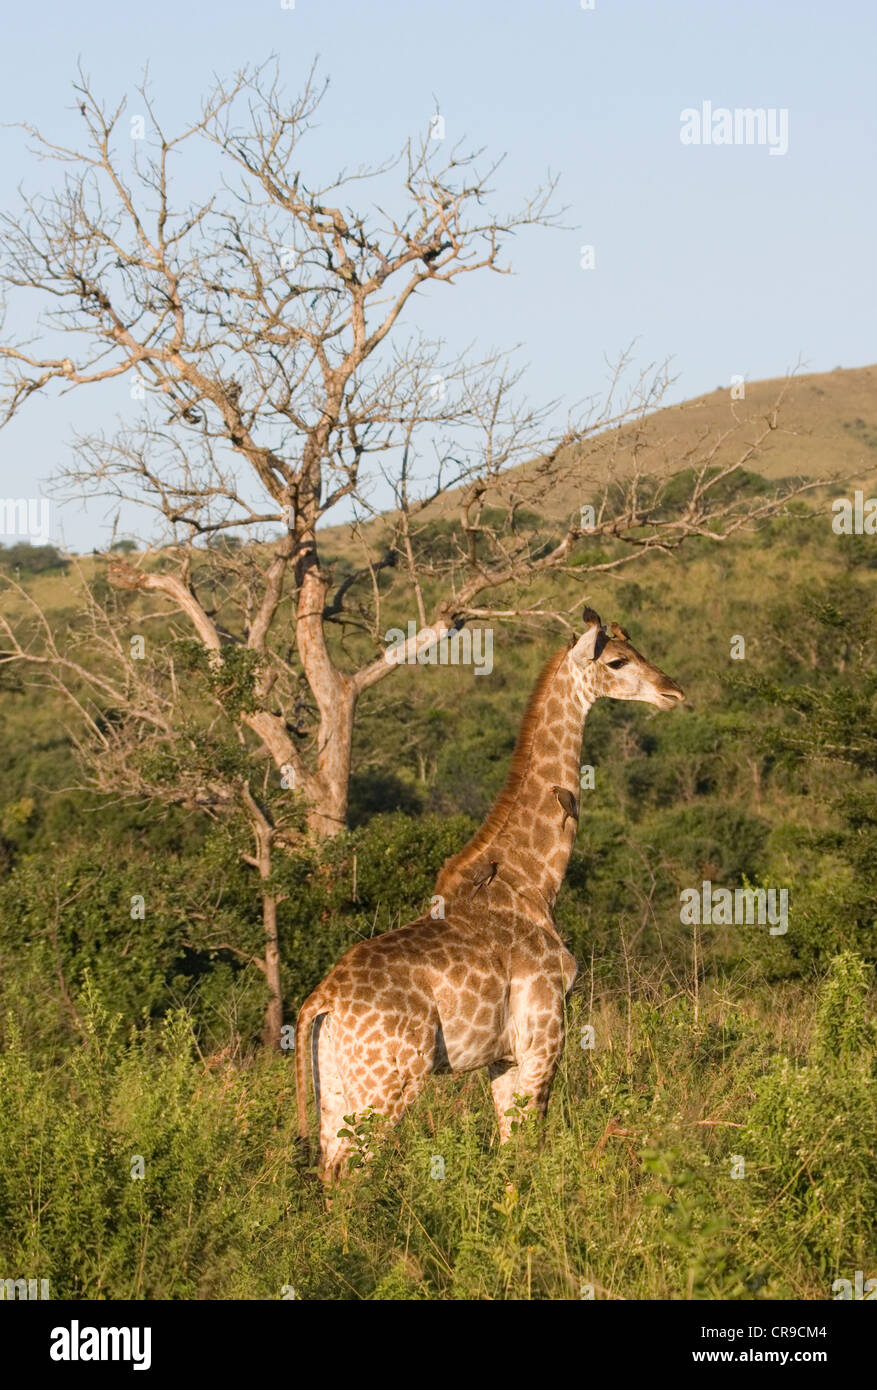 Giraffe in the Evening Sun Stock Photo